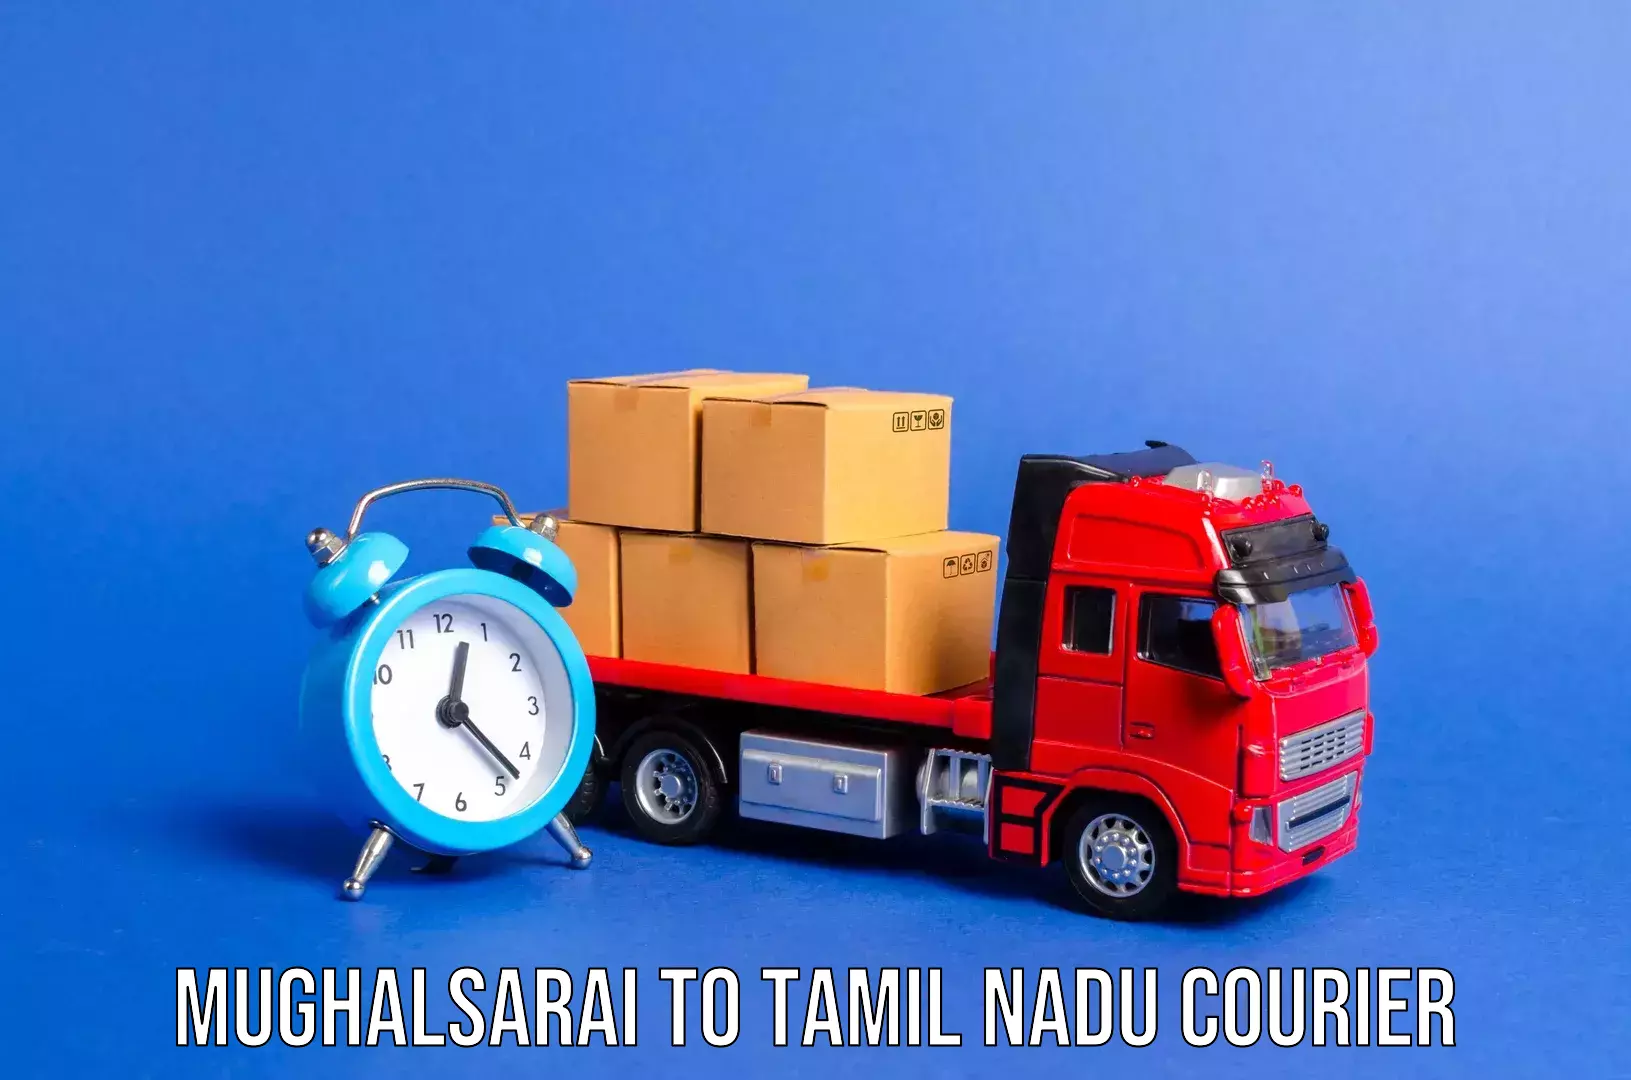 Luggage shipment processing Mughalsarai to Thiruvarur